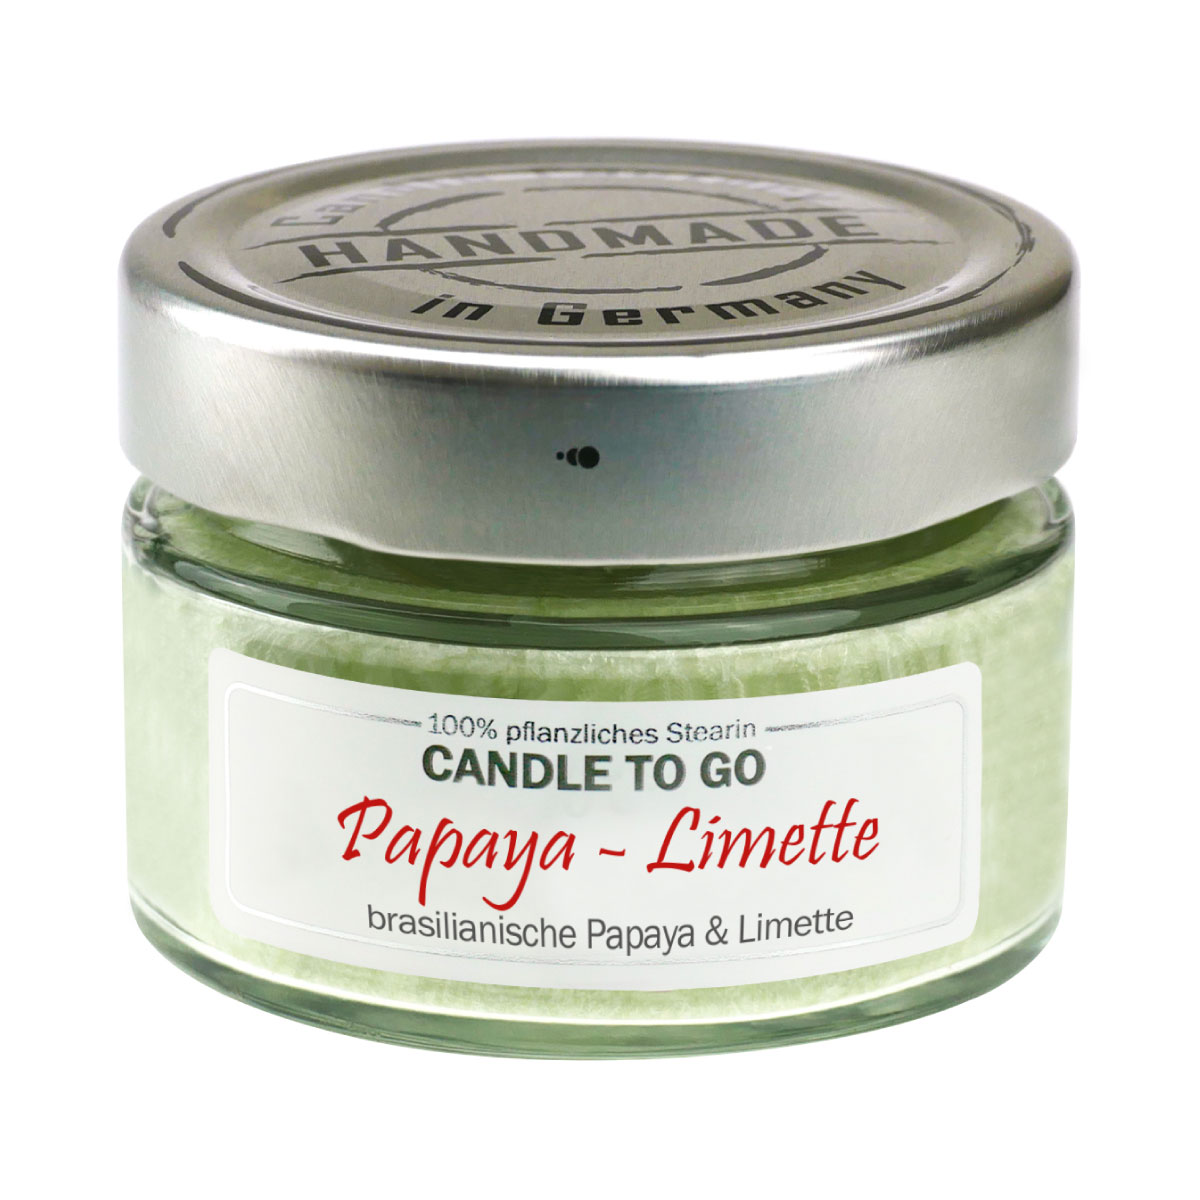 Papaya Limette - Candle to Go die Duftkerze für unterwegs